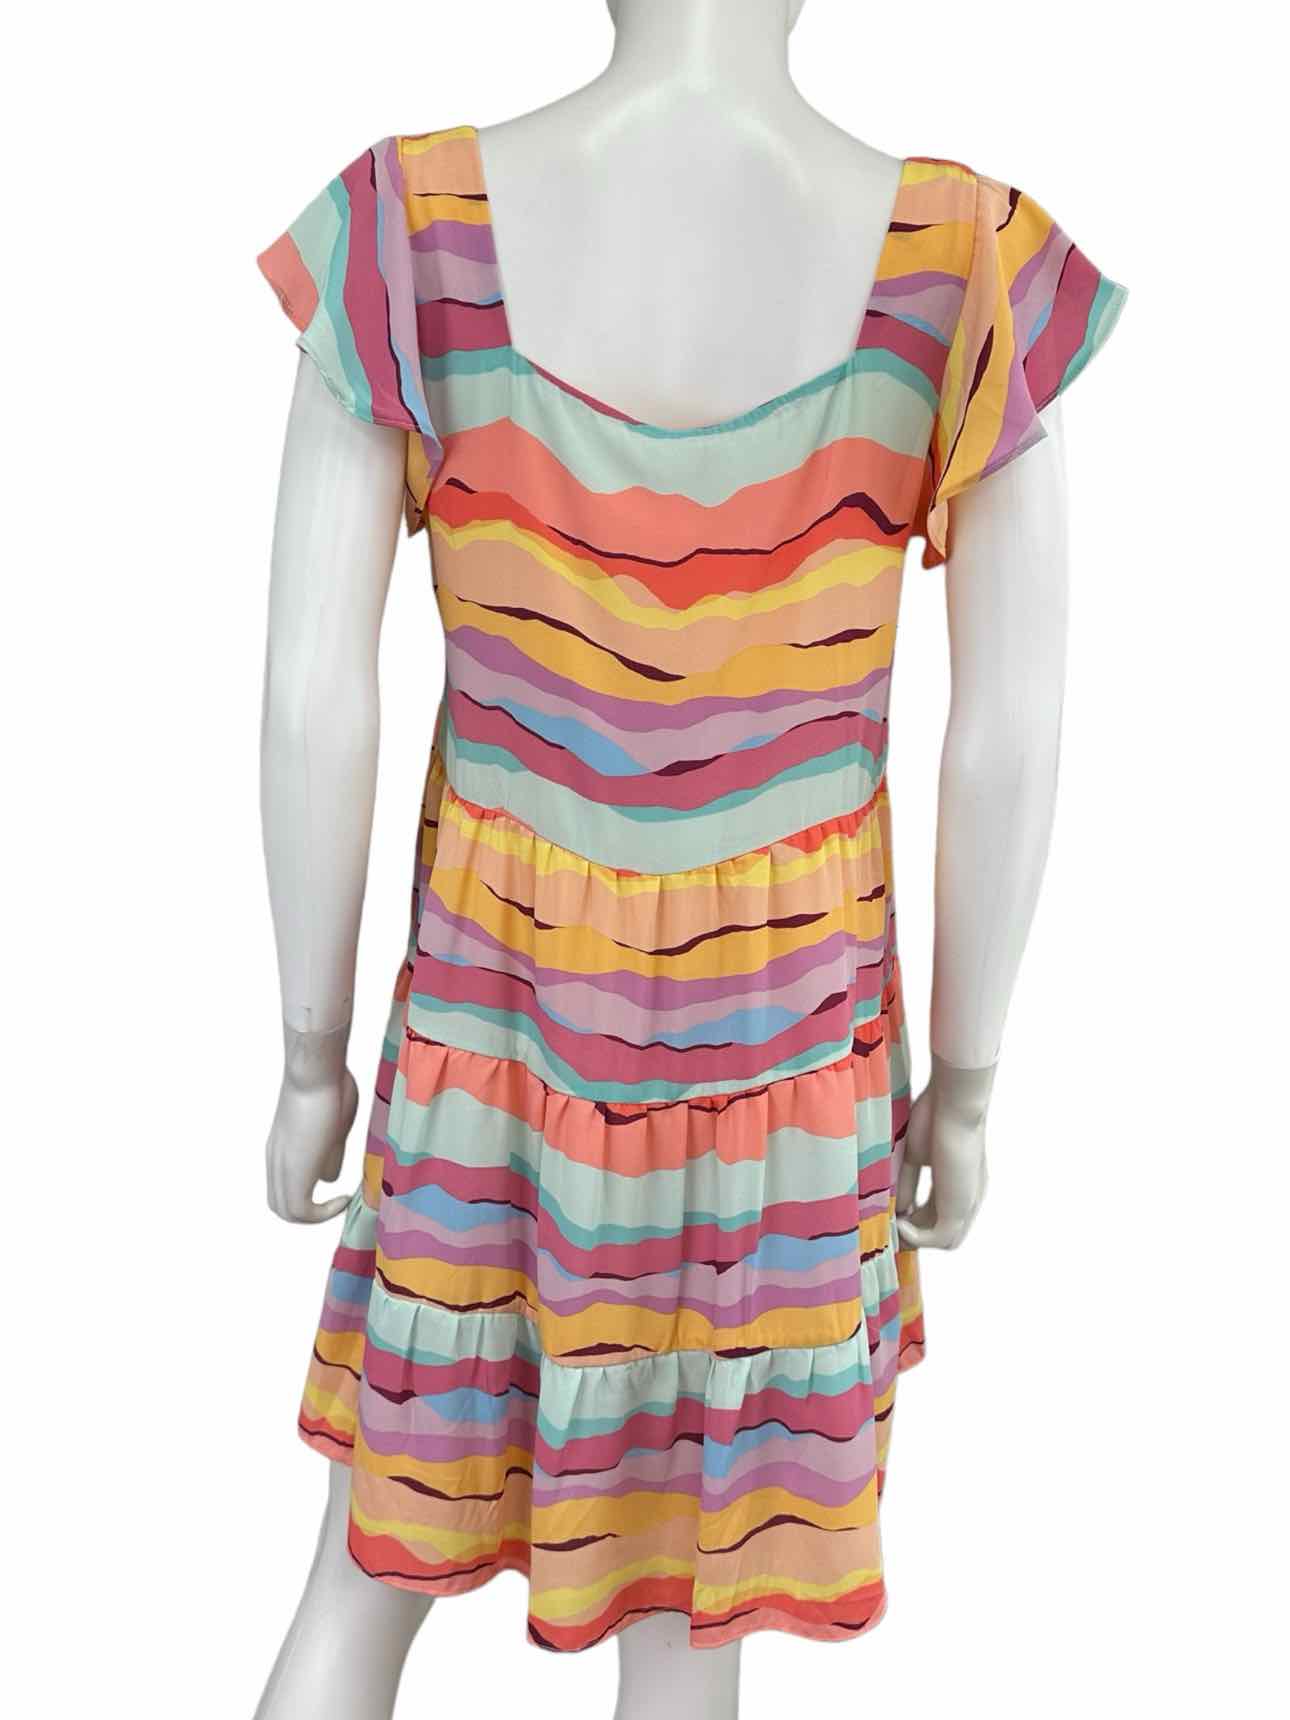 Buddy Love NWT Wavy Stripe Babydoll Dress Size M